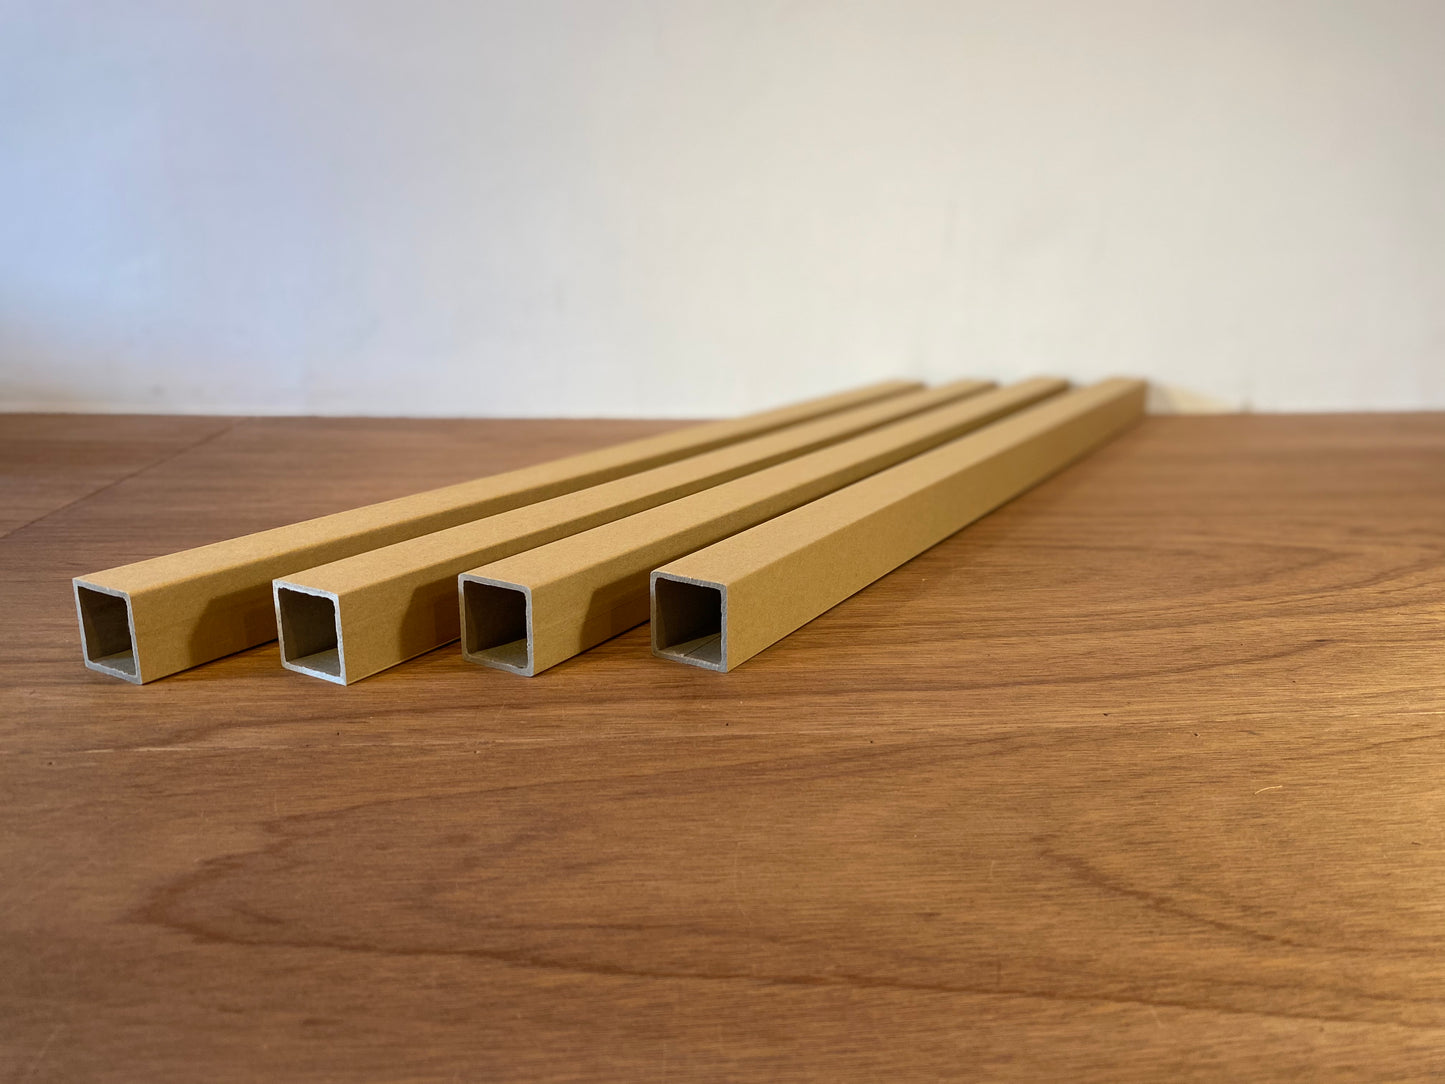 紙管(90cm×4本セット) / Paper tubes (90cm×4 pieces)